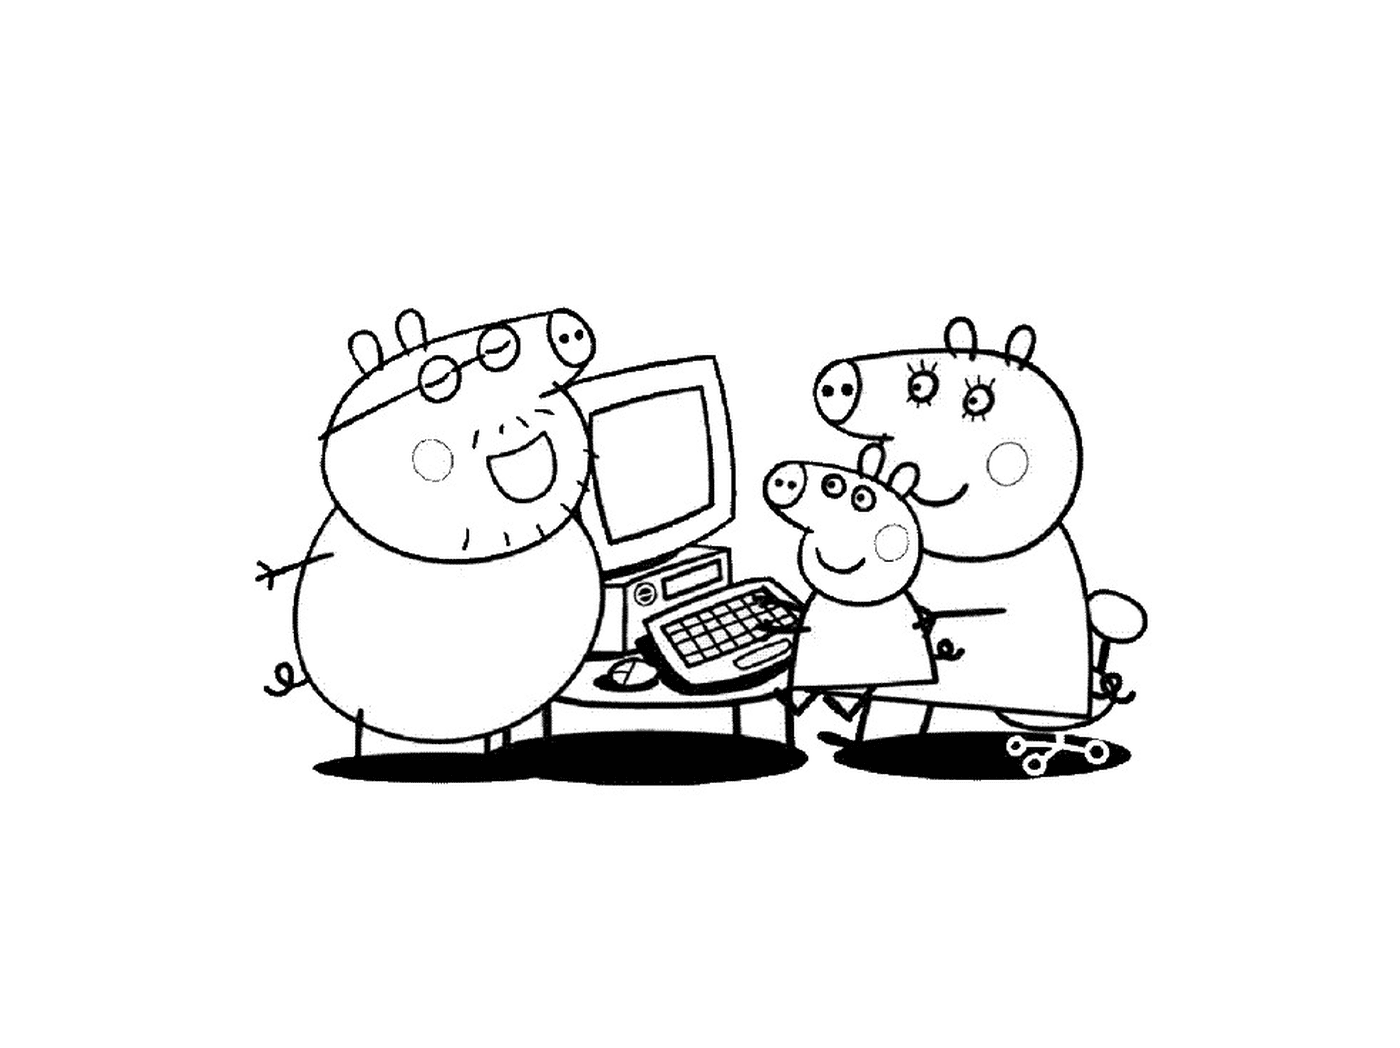   Un groupe de personnages Peppa Pig devant un ordinateur 